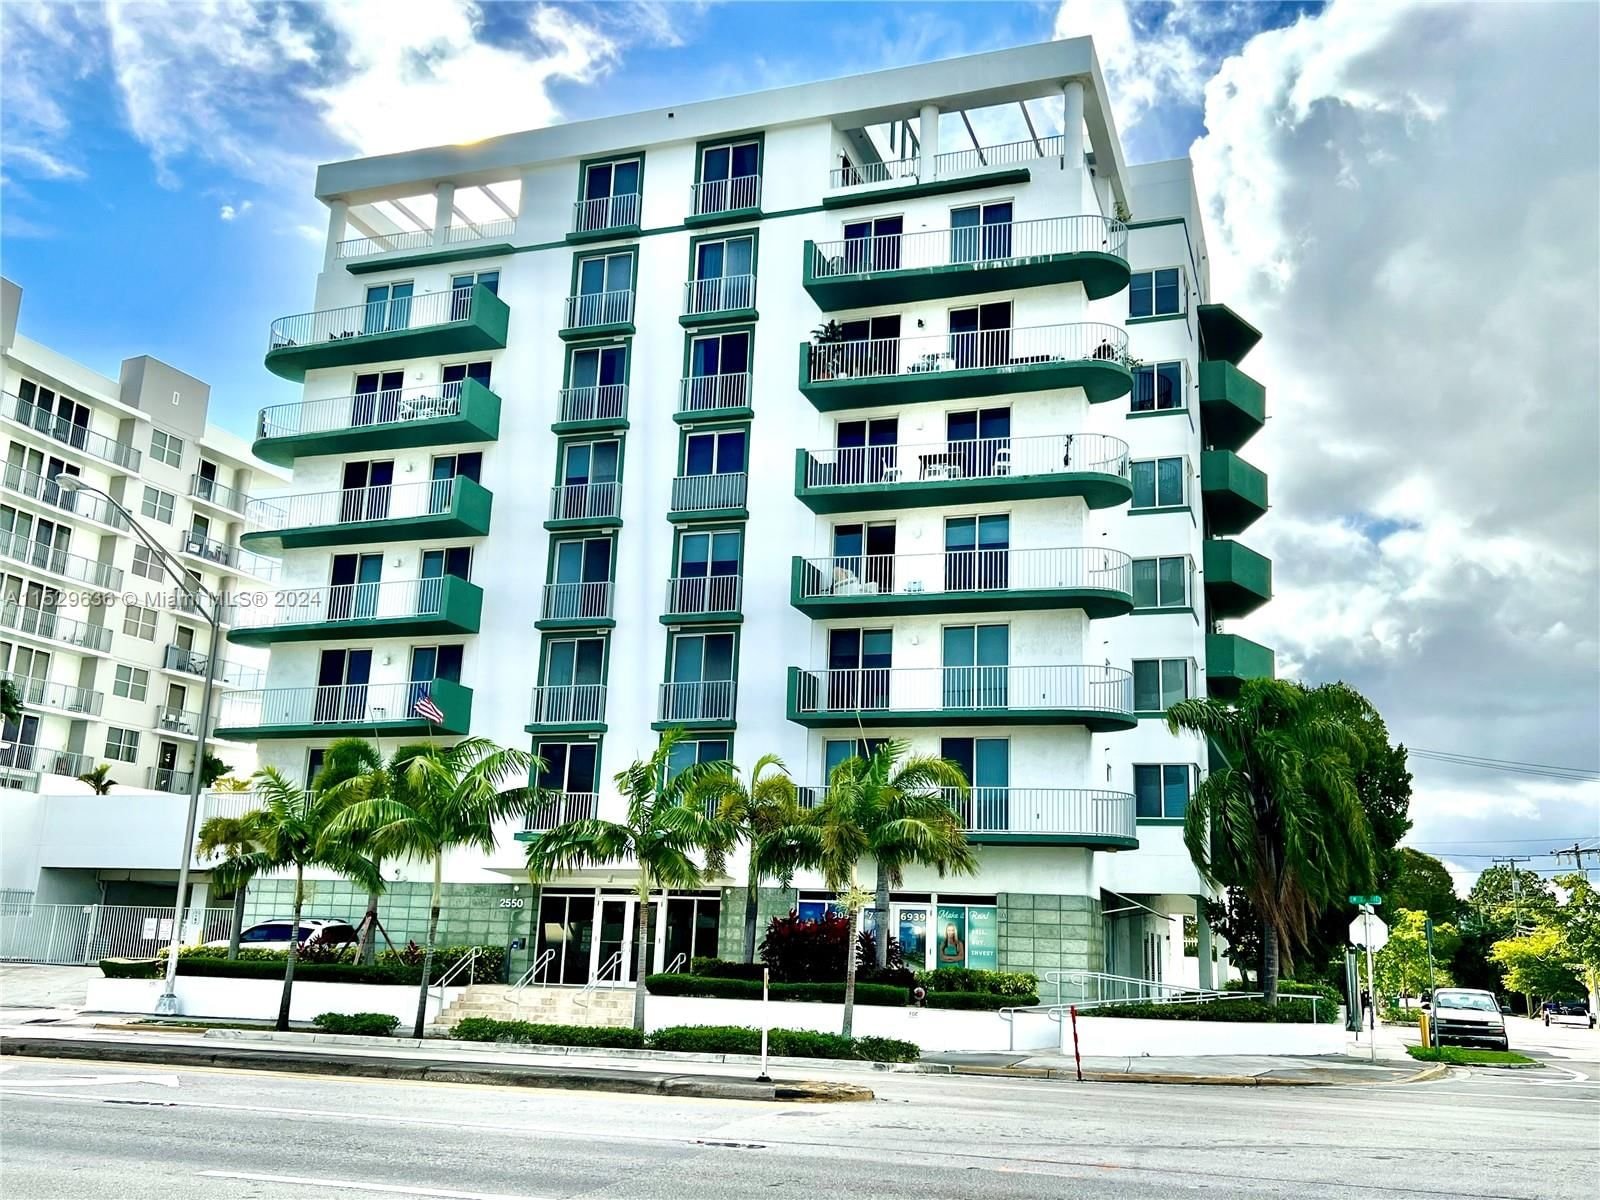 Real estate property located at 2550 27th Ave #305, Miami-Dade County, GROVE VIEW CONDO, Miami, FL